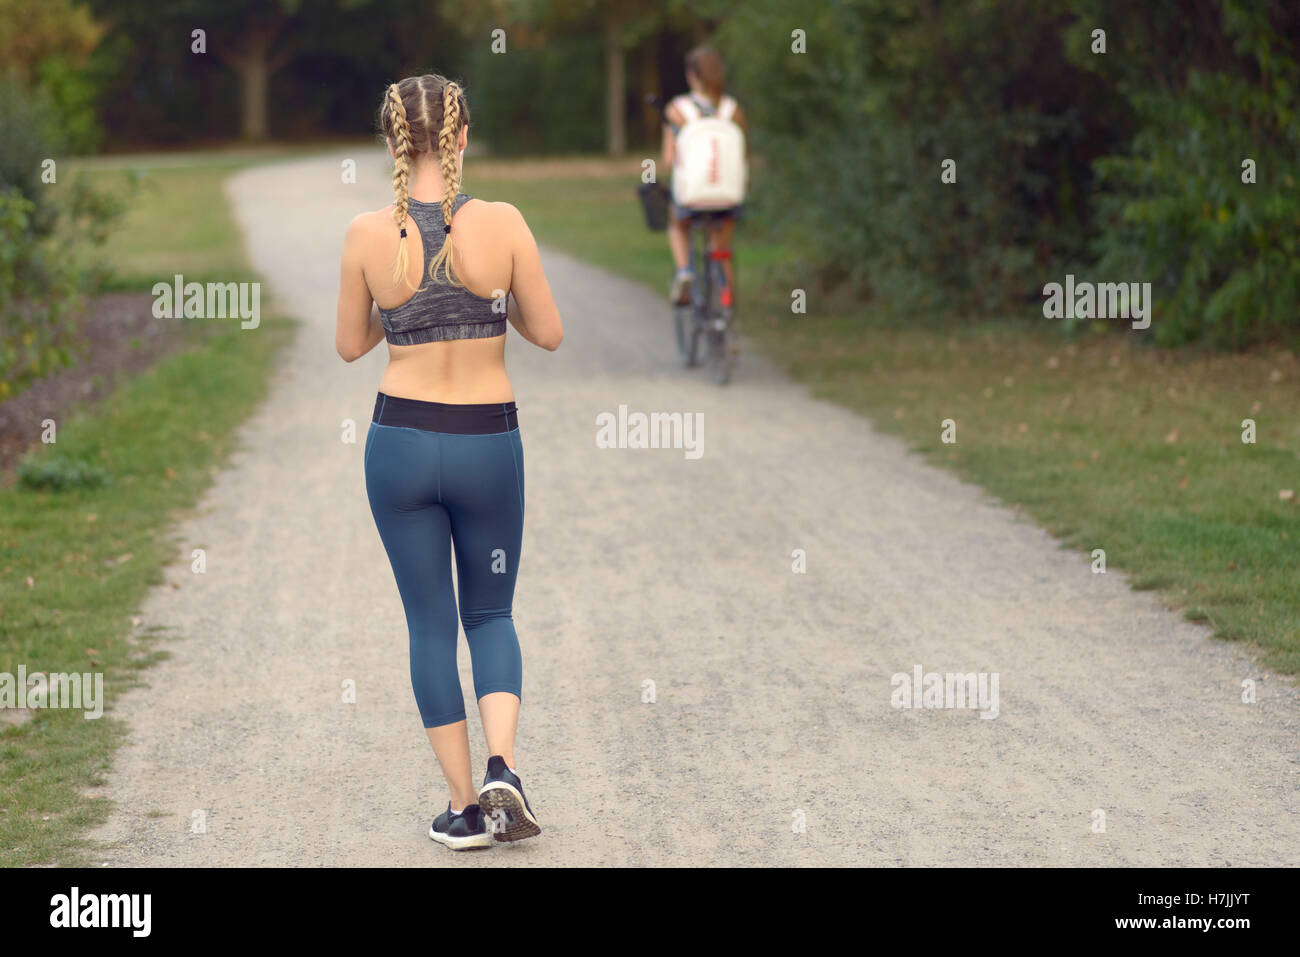 Giovane donna jogging in un percorso di allontanamento dalla telecamera lungo una stradina con un ciclista davanti a lei in una vita sana Foto Stock